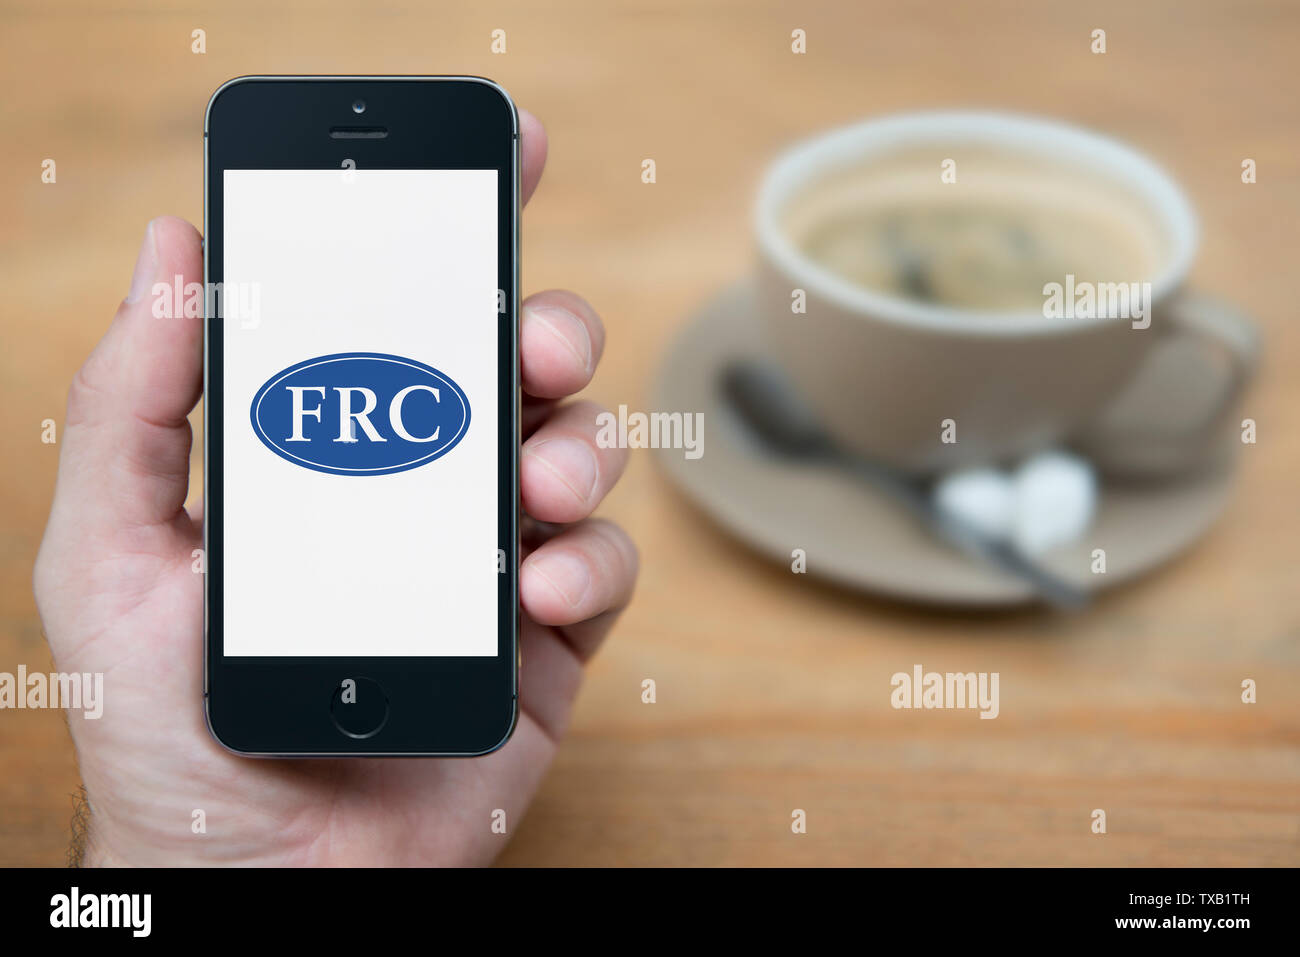 Un hombre mira el iPhone que muestra el Consejo de Informes Financieros (FRC) logotipo (uso Editorial solamente). Foto de stock